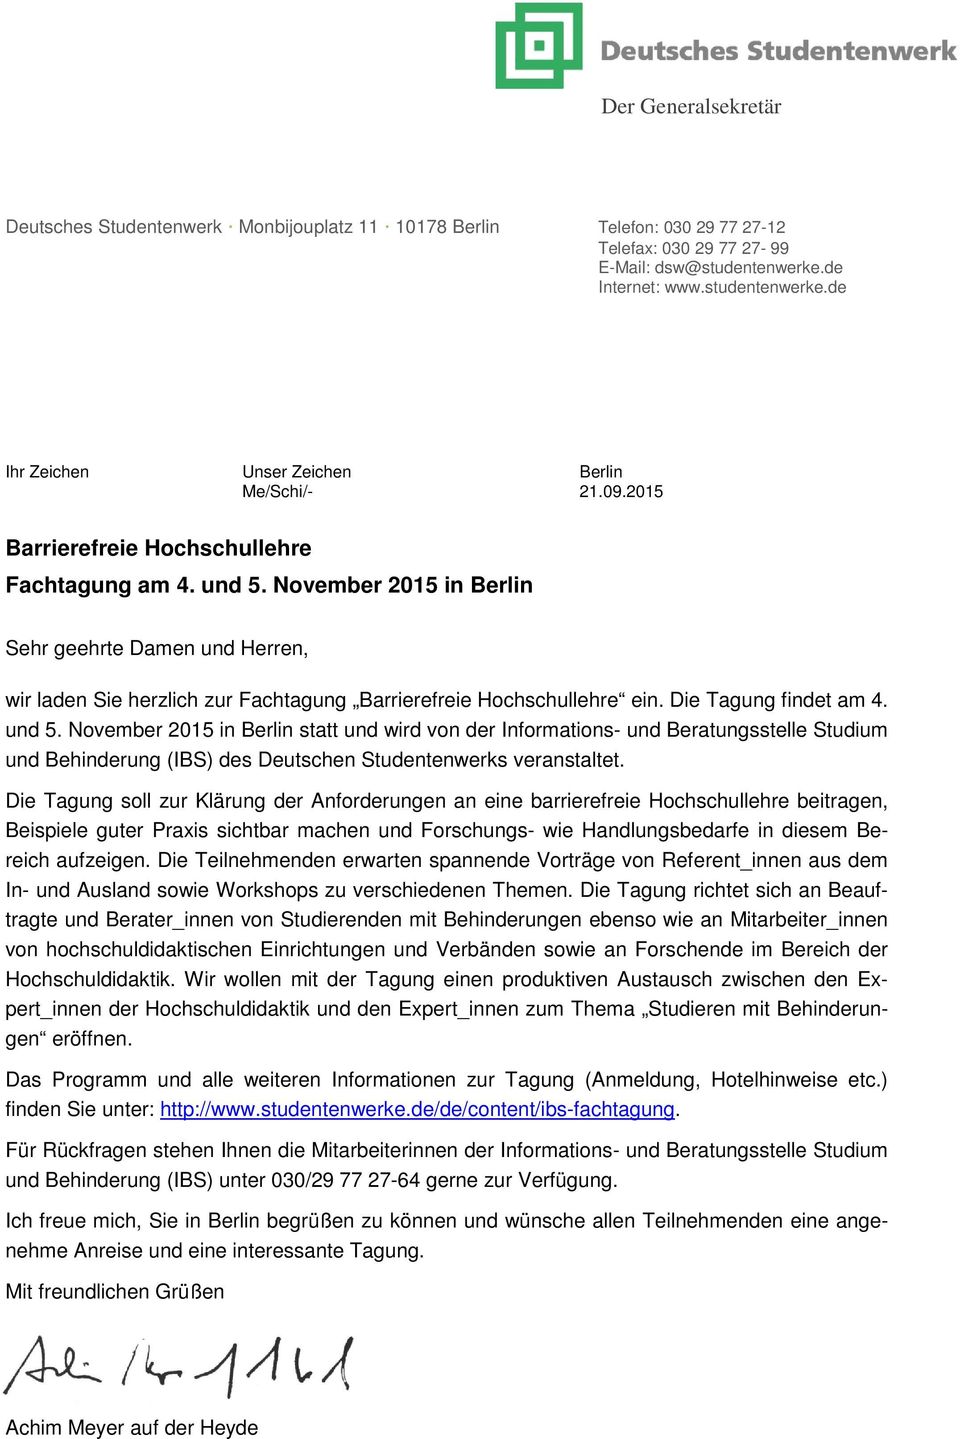 Die Tagung findet am 4. und 5. November 2015 in Berlin statt und wird von der Informations- und Beratungsstelle Studium und Behinderung (IBS) des Deutschen Studentenwerks veranstaltet.